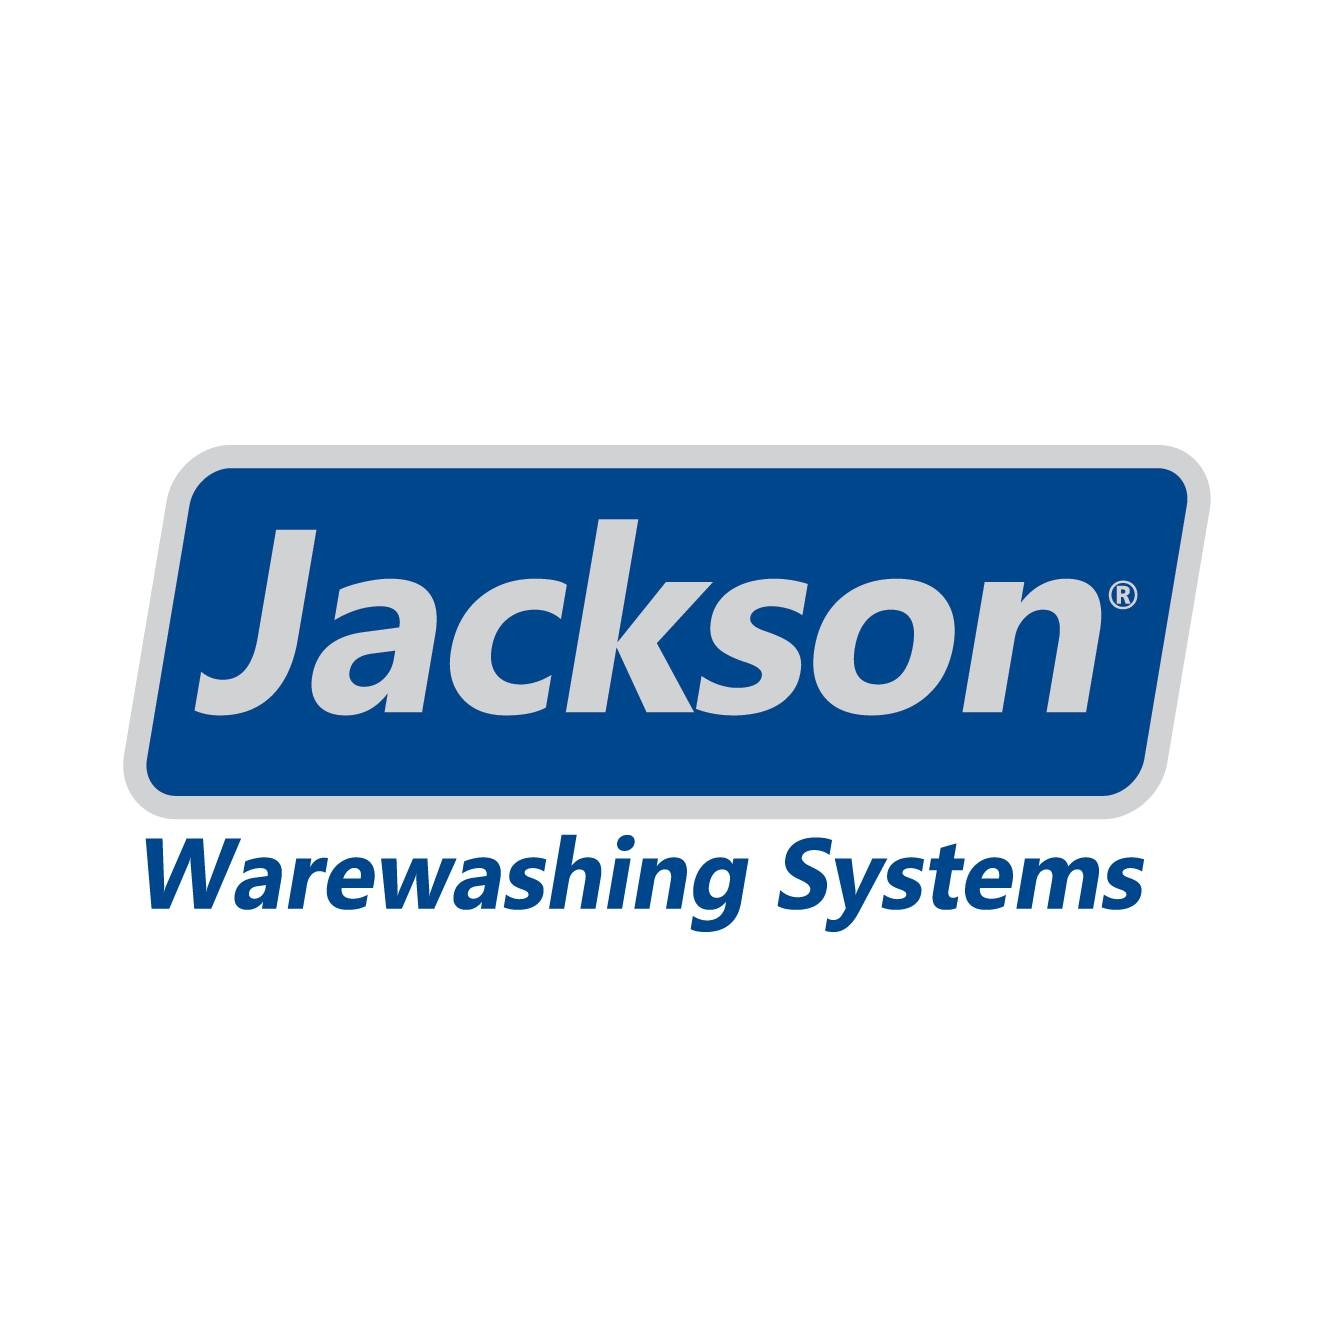 Jackson WWS